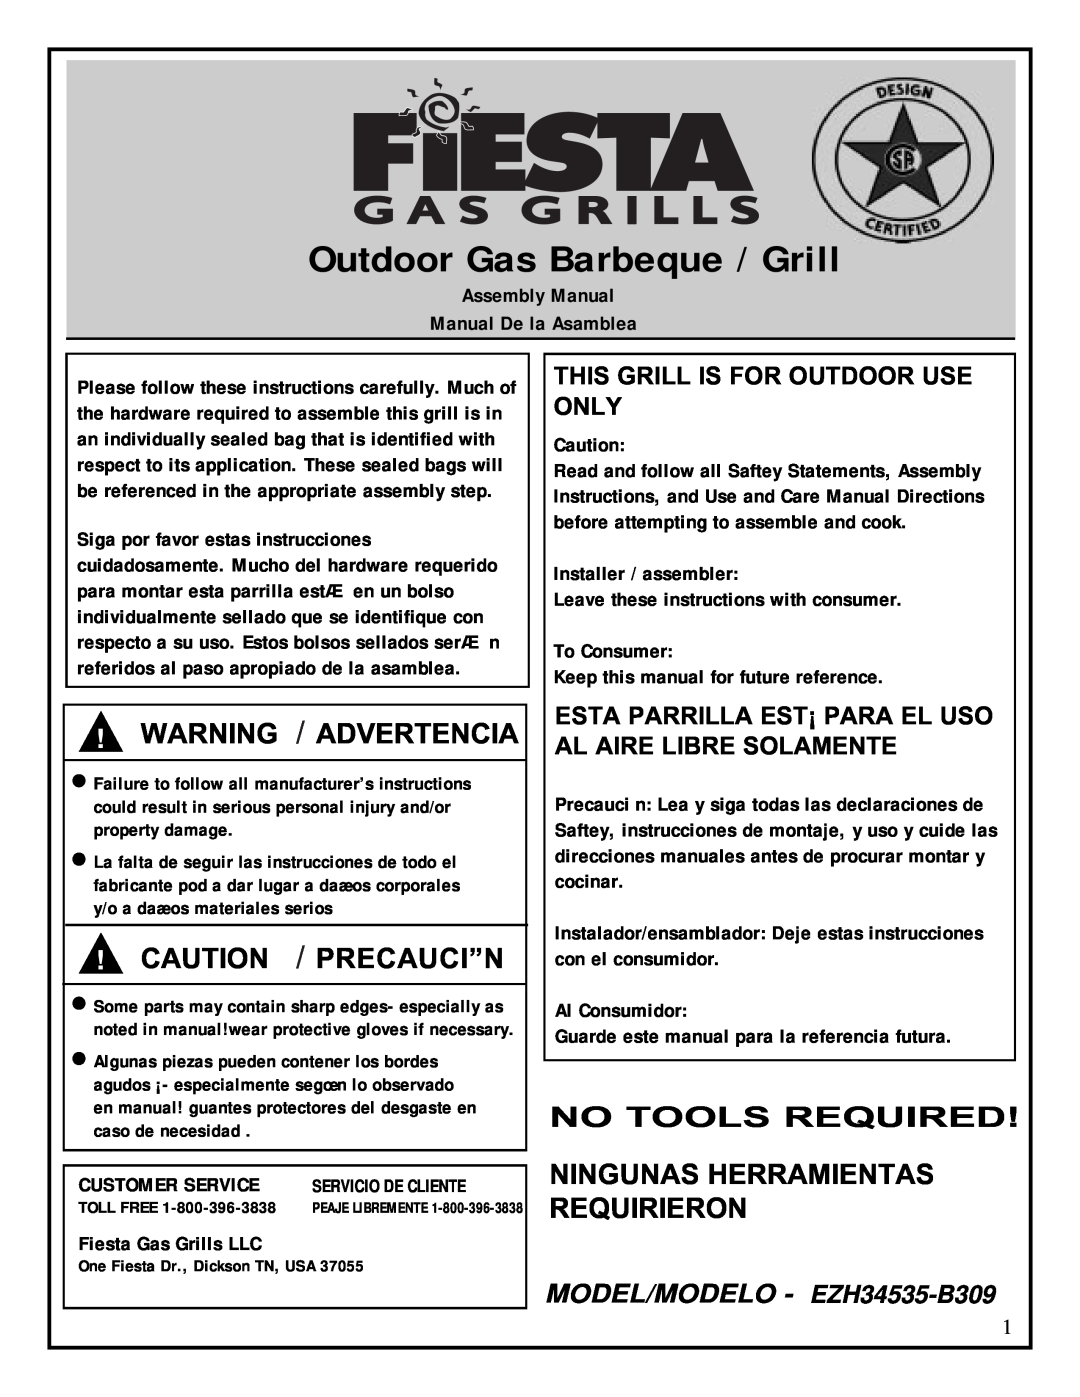 Fiesta EZH34535-B309 manual Ningunas Herramientas Requirieron, Outdoor Gas Barbeque / Grill, Warning / Advertencia 